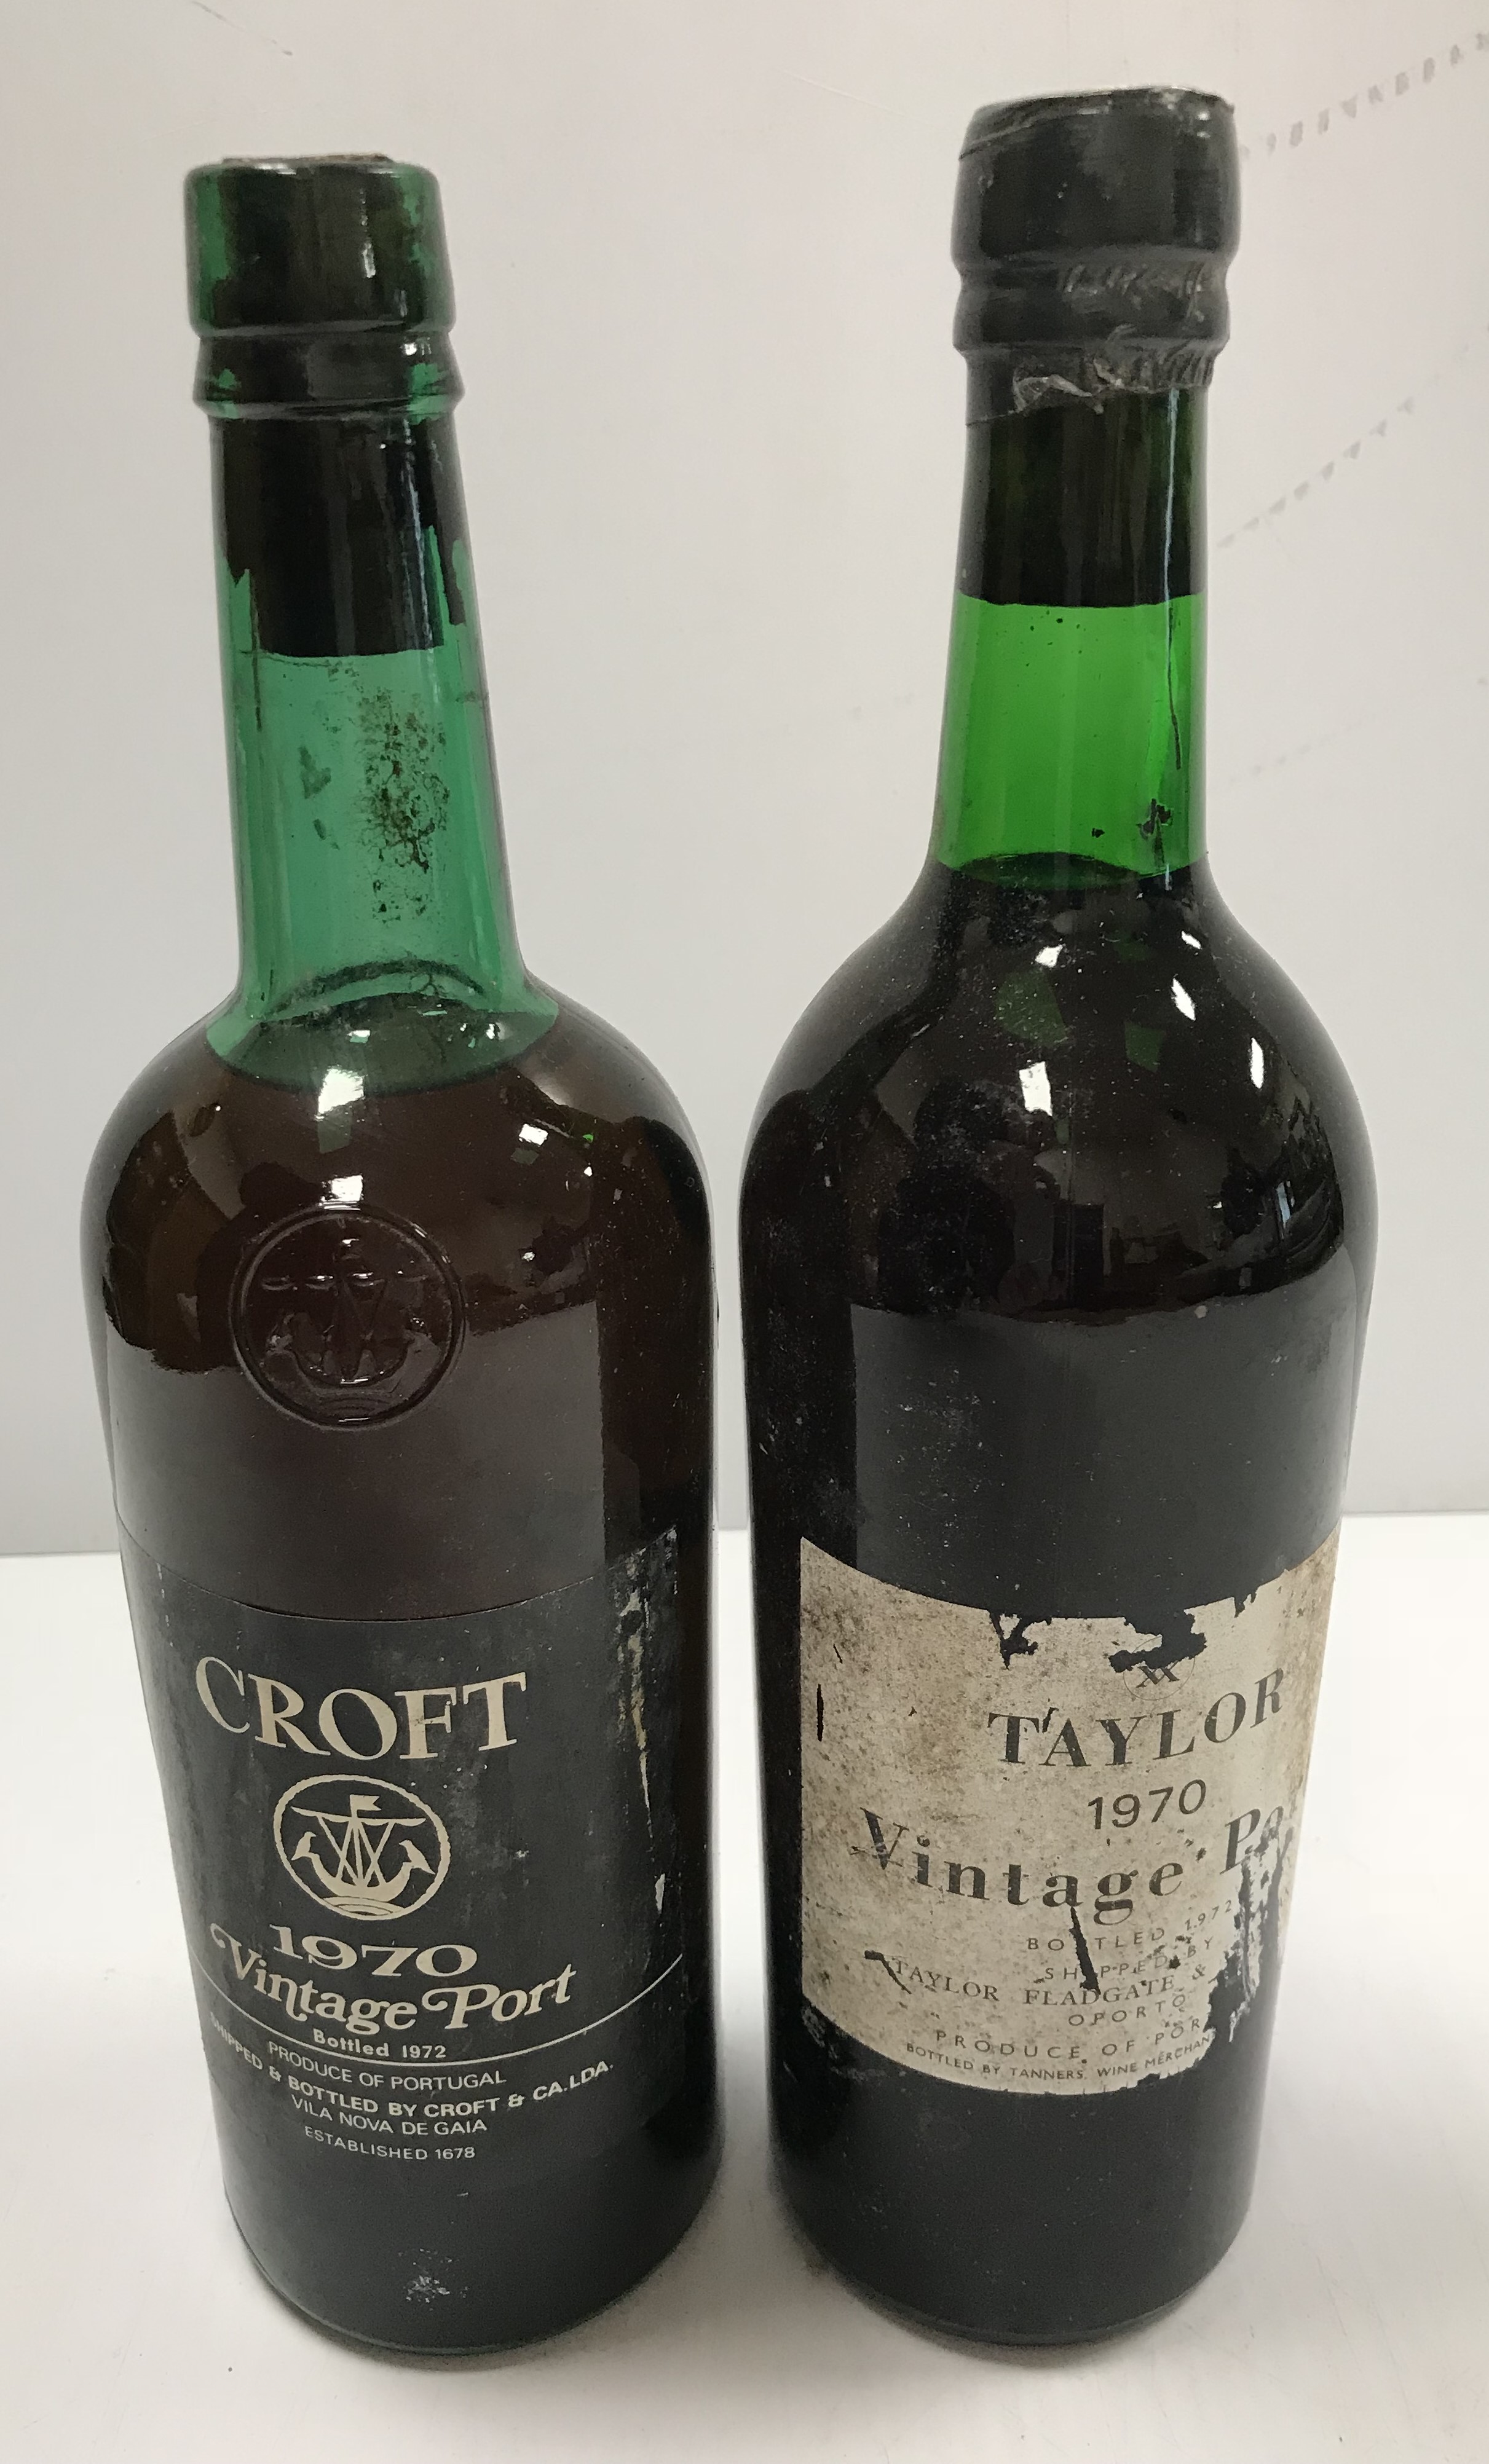 One bottle Taylor's vintage port 1970 and one bottle Croft vintage port 1970